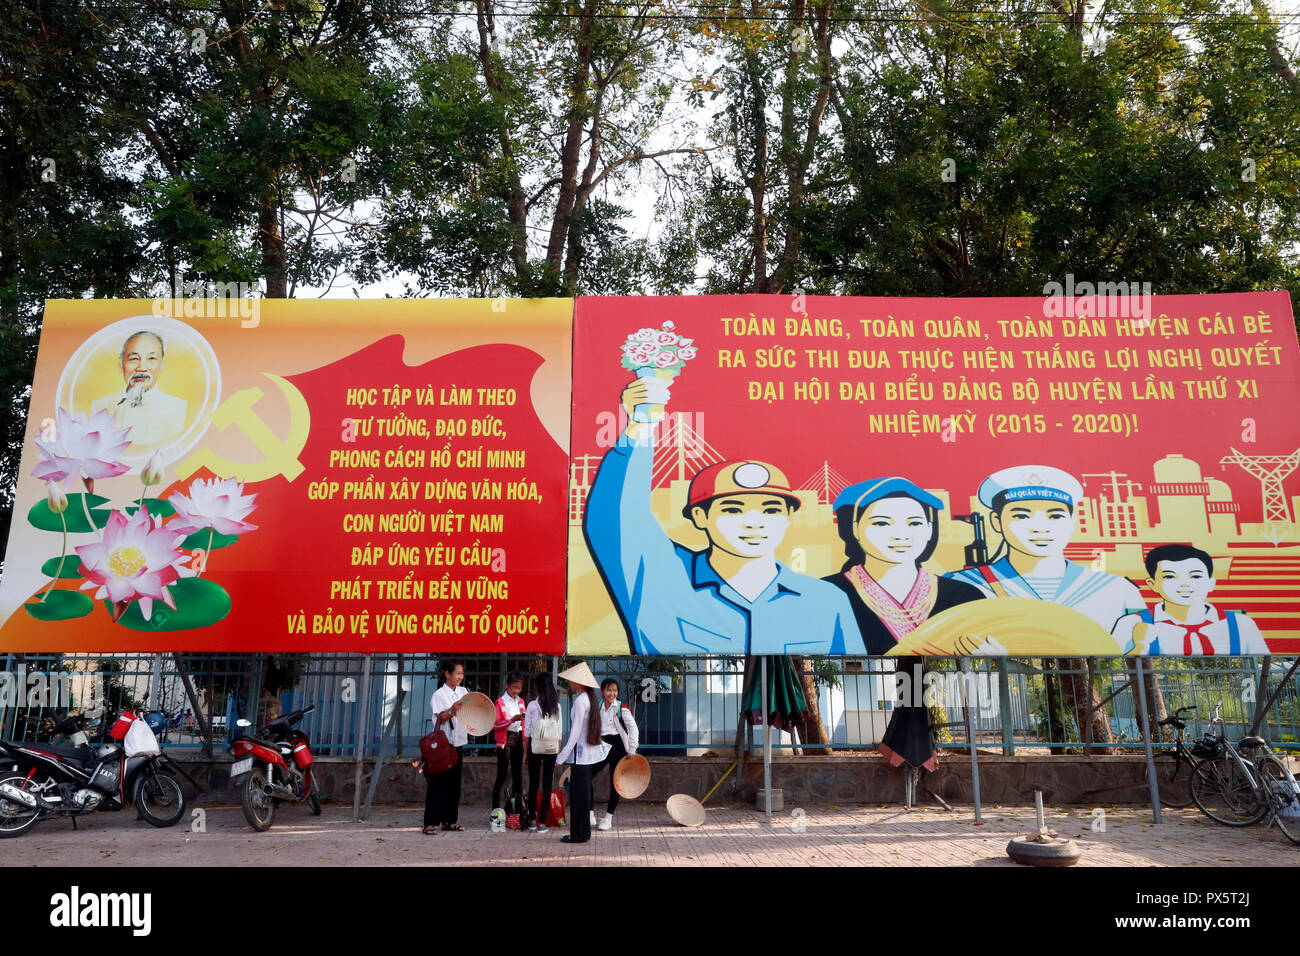 Affiche de propagande du gouvernement communiste dans la rue. Cai Be. Le Vietnam. Banque D'Images